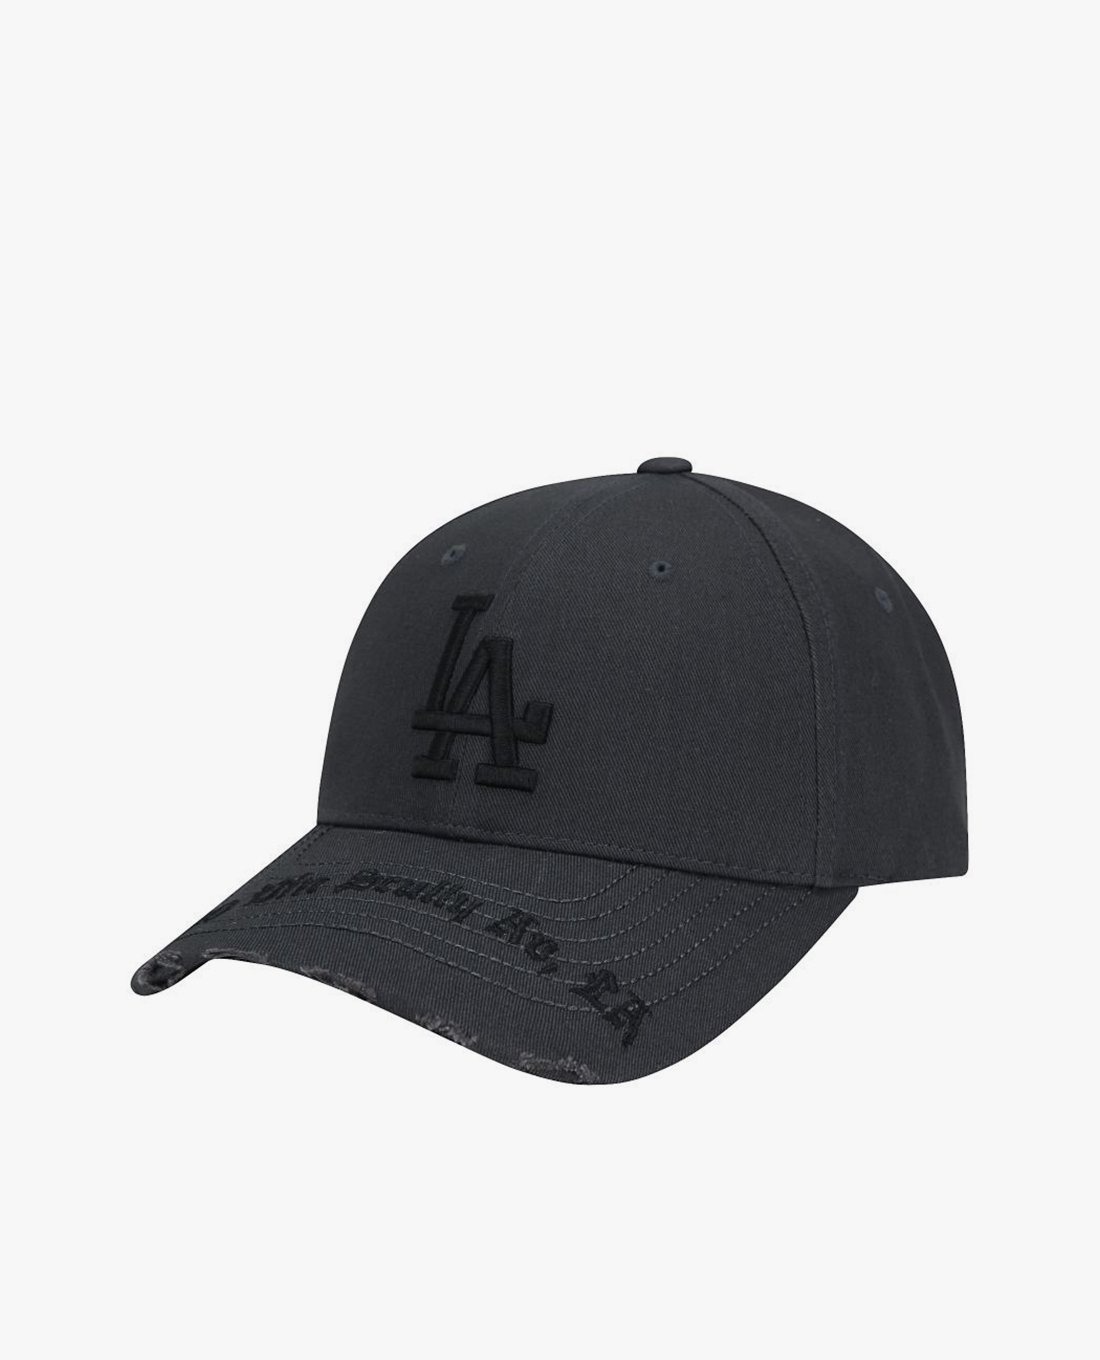 Phụ Kiện Chính Hãng - Mũ Lưỡi Trai MLB Logo LA 1000 Gothic 'Grey' - 32CPKP941-2